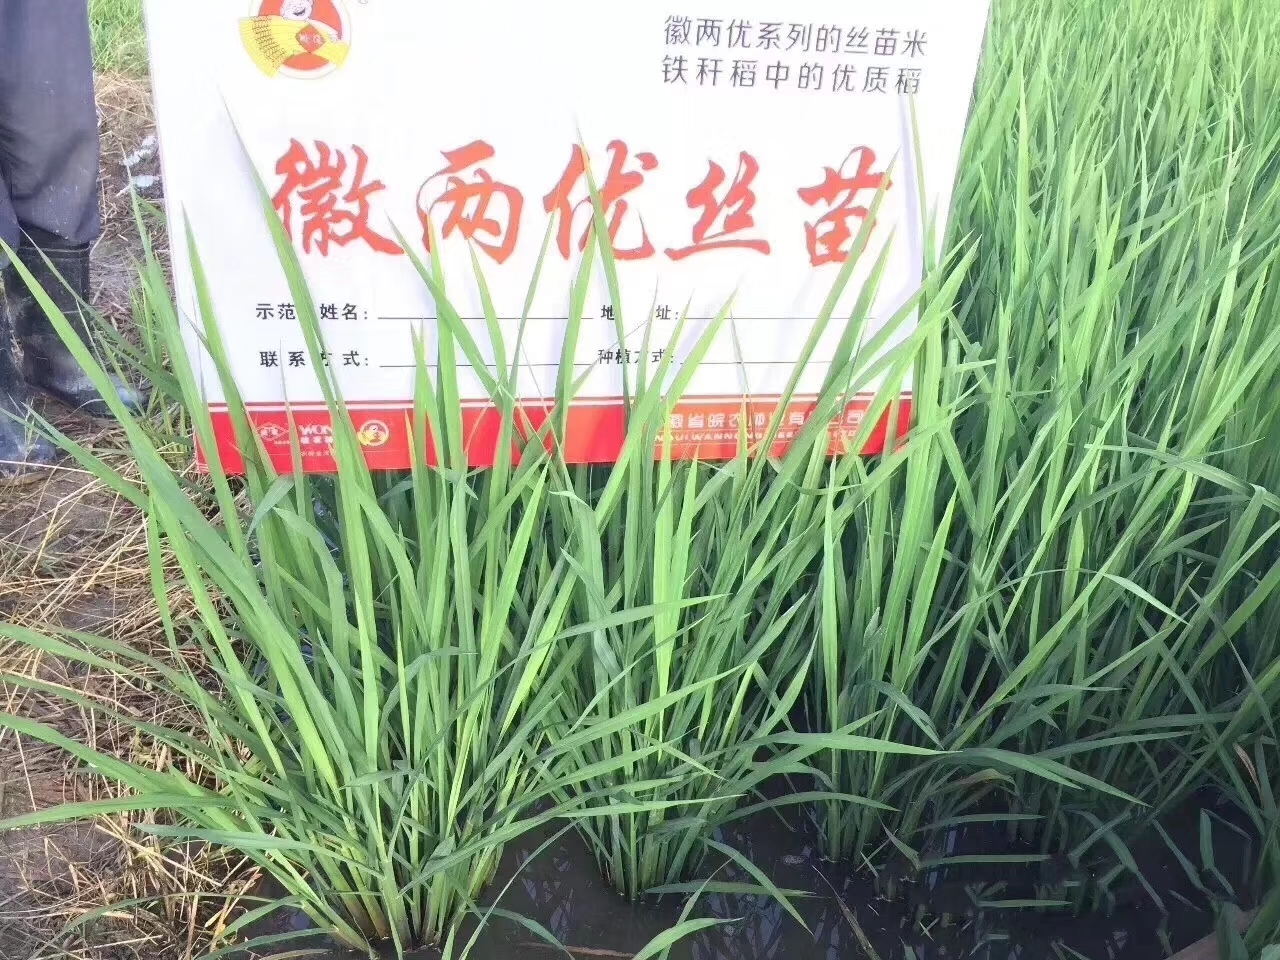 水稻品种徽两优丝苗图片